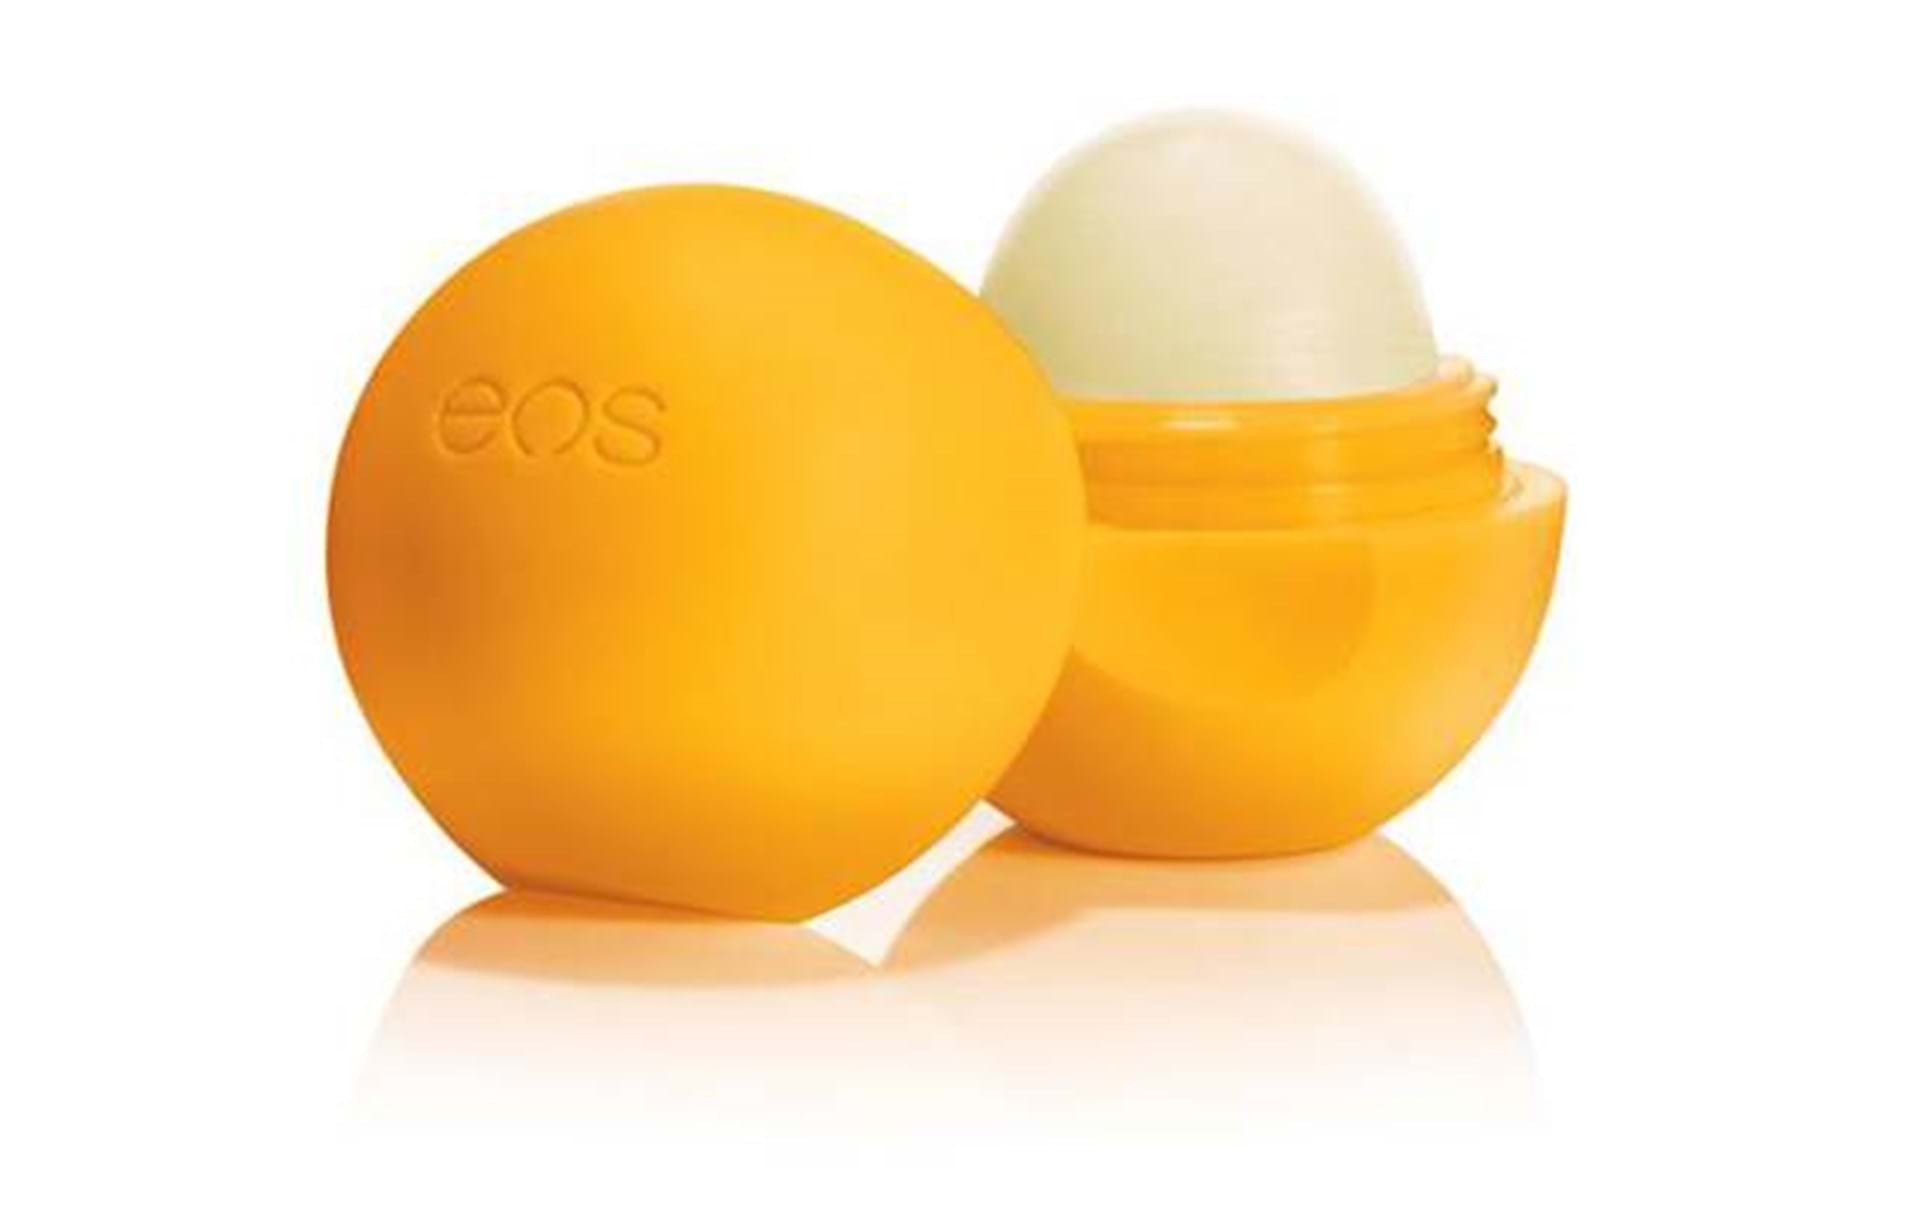 Eos-læbepomade er sundhedsskadelig advarer Miljøstyrelsen Eurowoman - ALT. dk